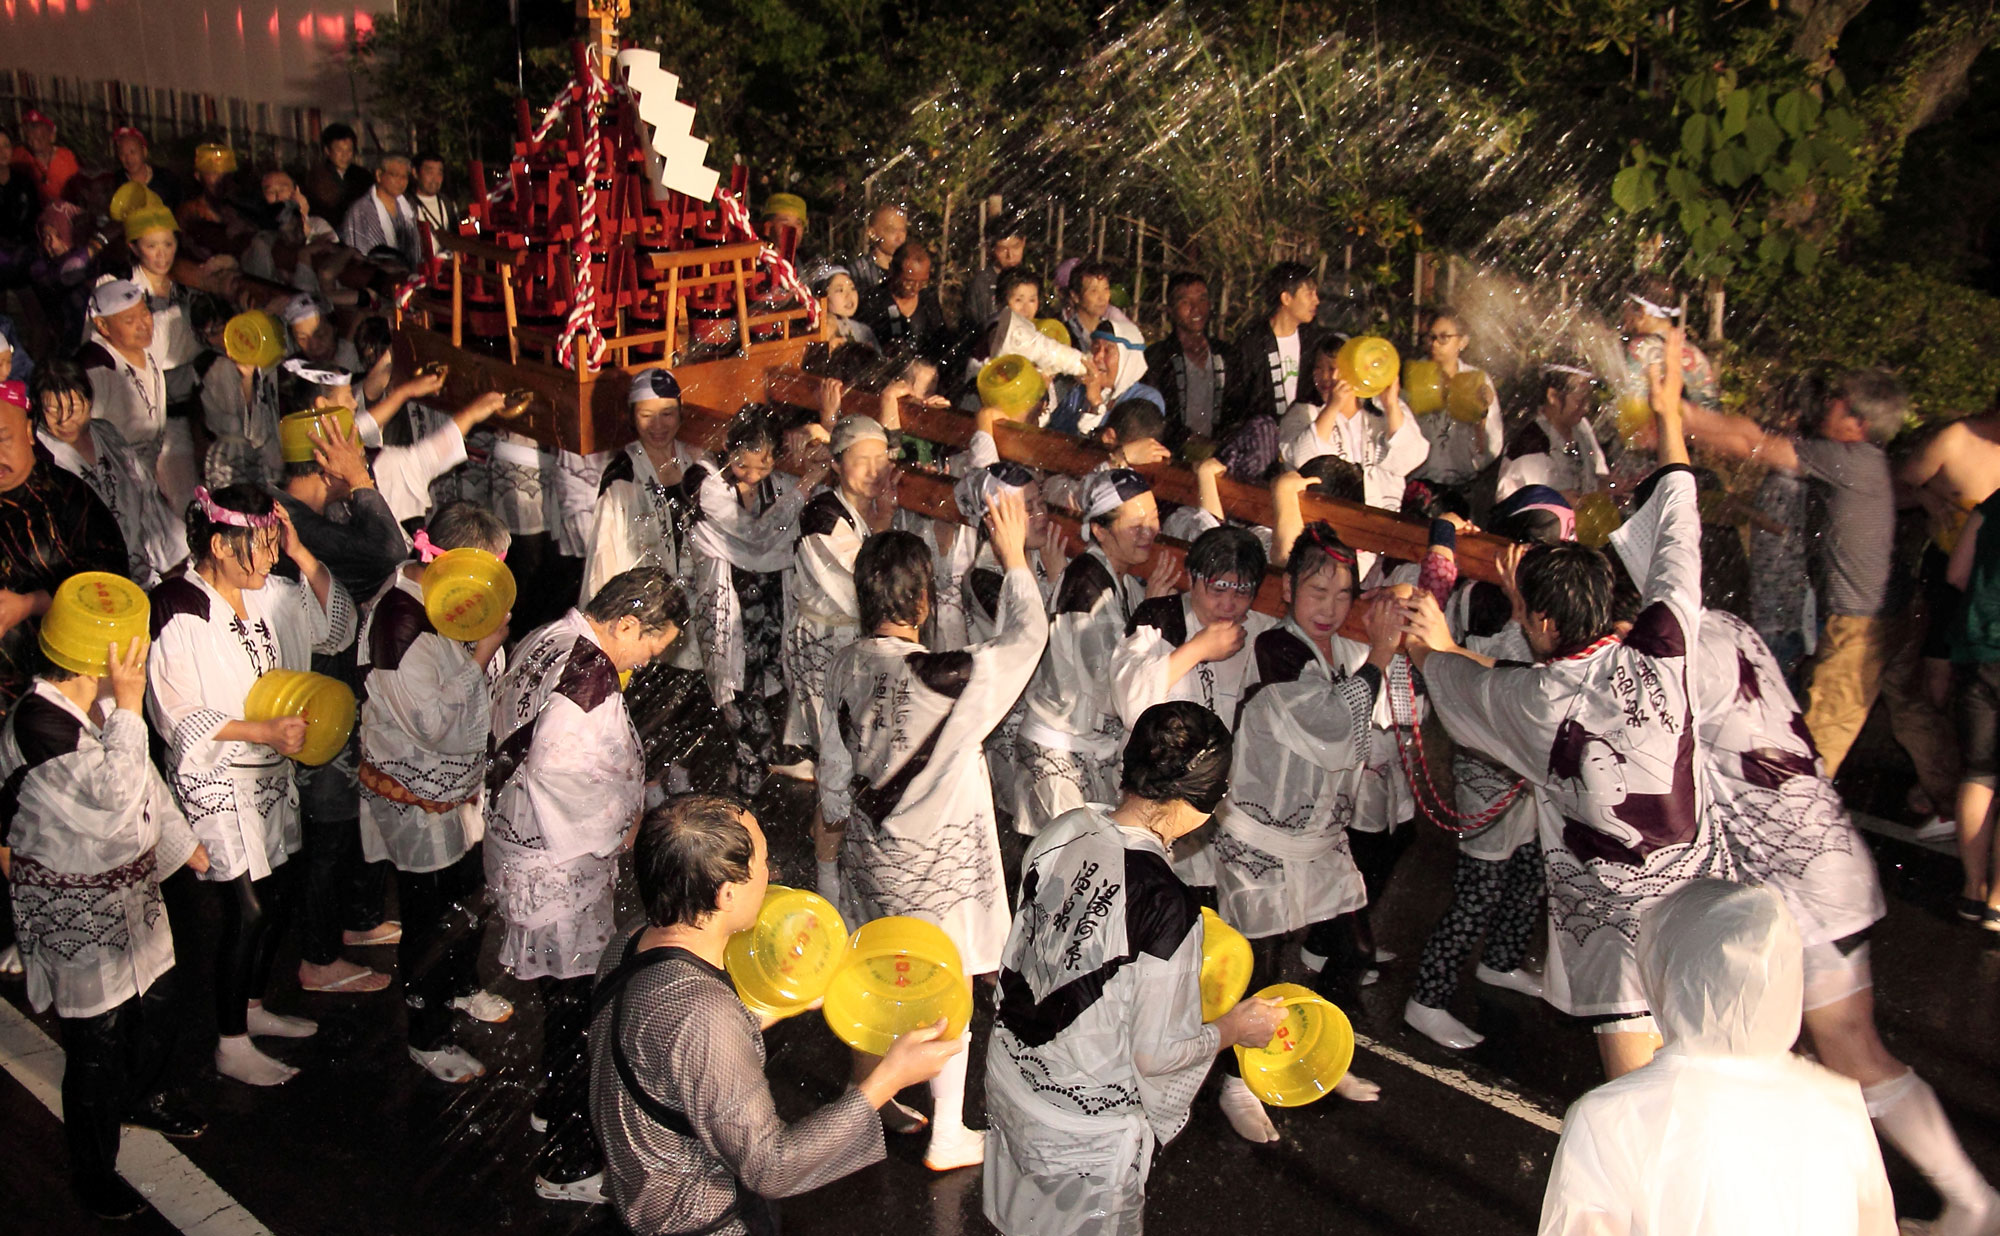 Yugawara Onsen Yukake Festival Pour hot water in a bucket